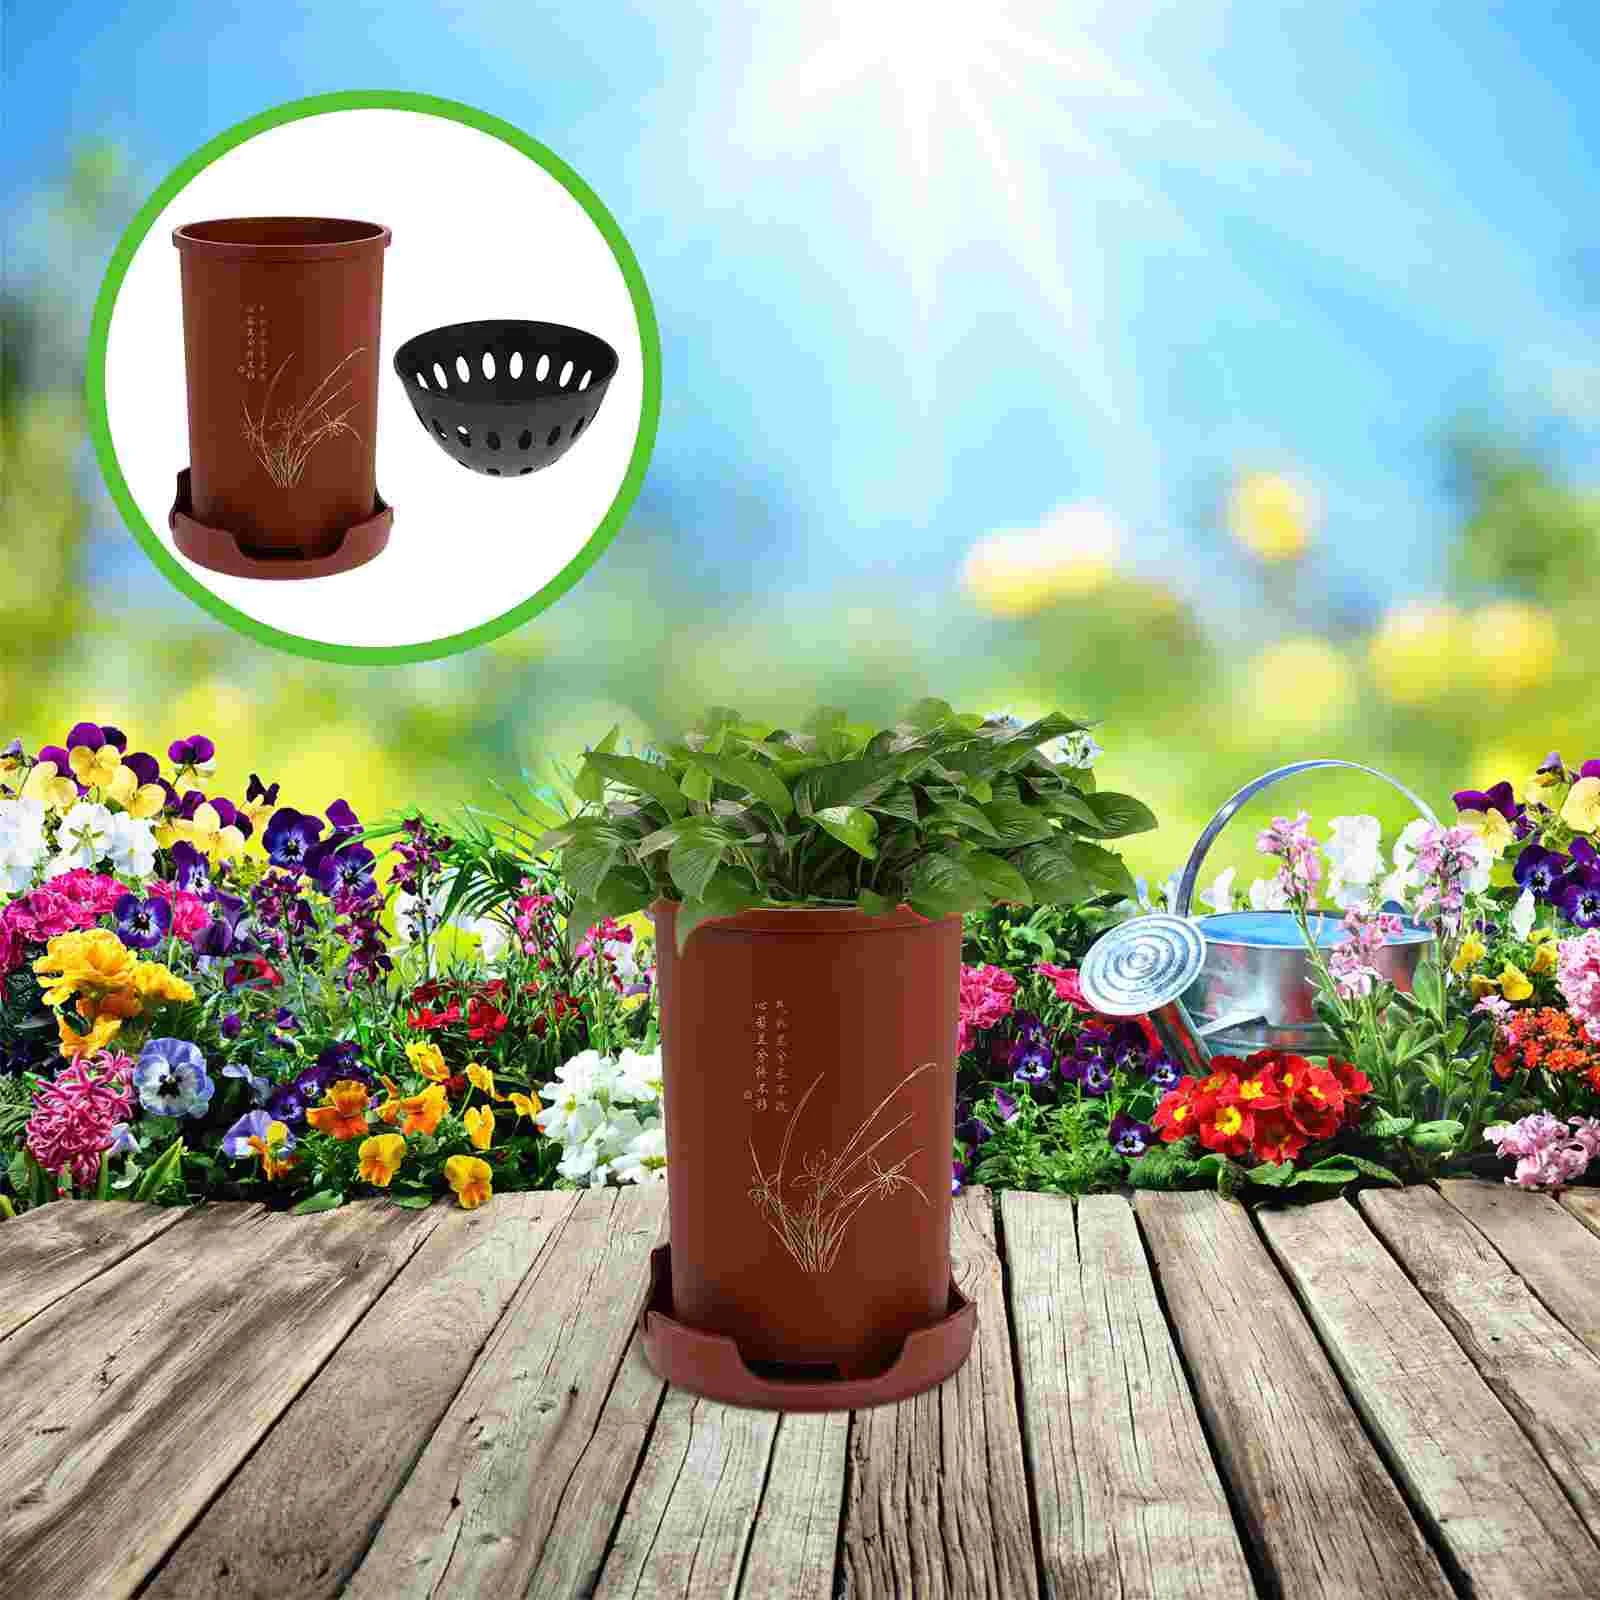 

Orchid Pot Novel Flowerpot Vintage Indoor Pots Creative Holder Home Simple Pots for Vases Automatic Succulent Flowerpots